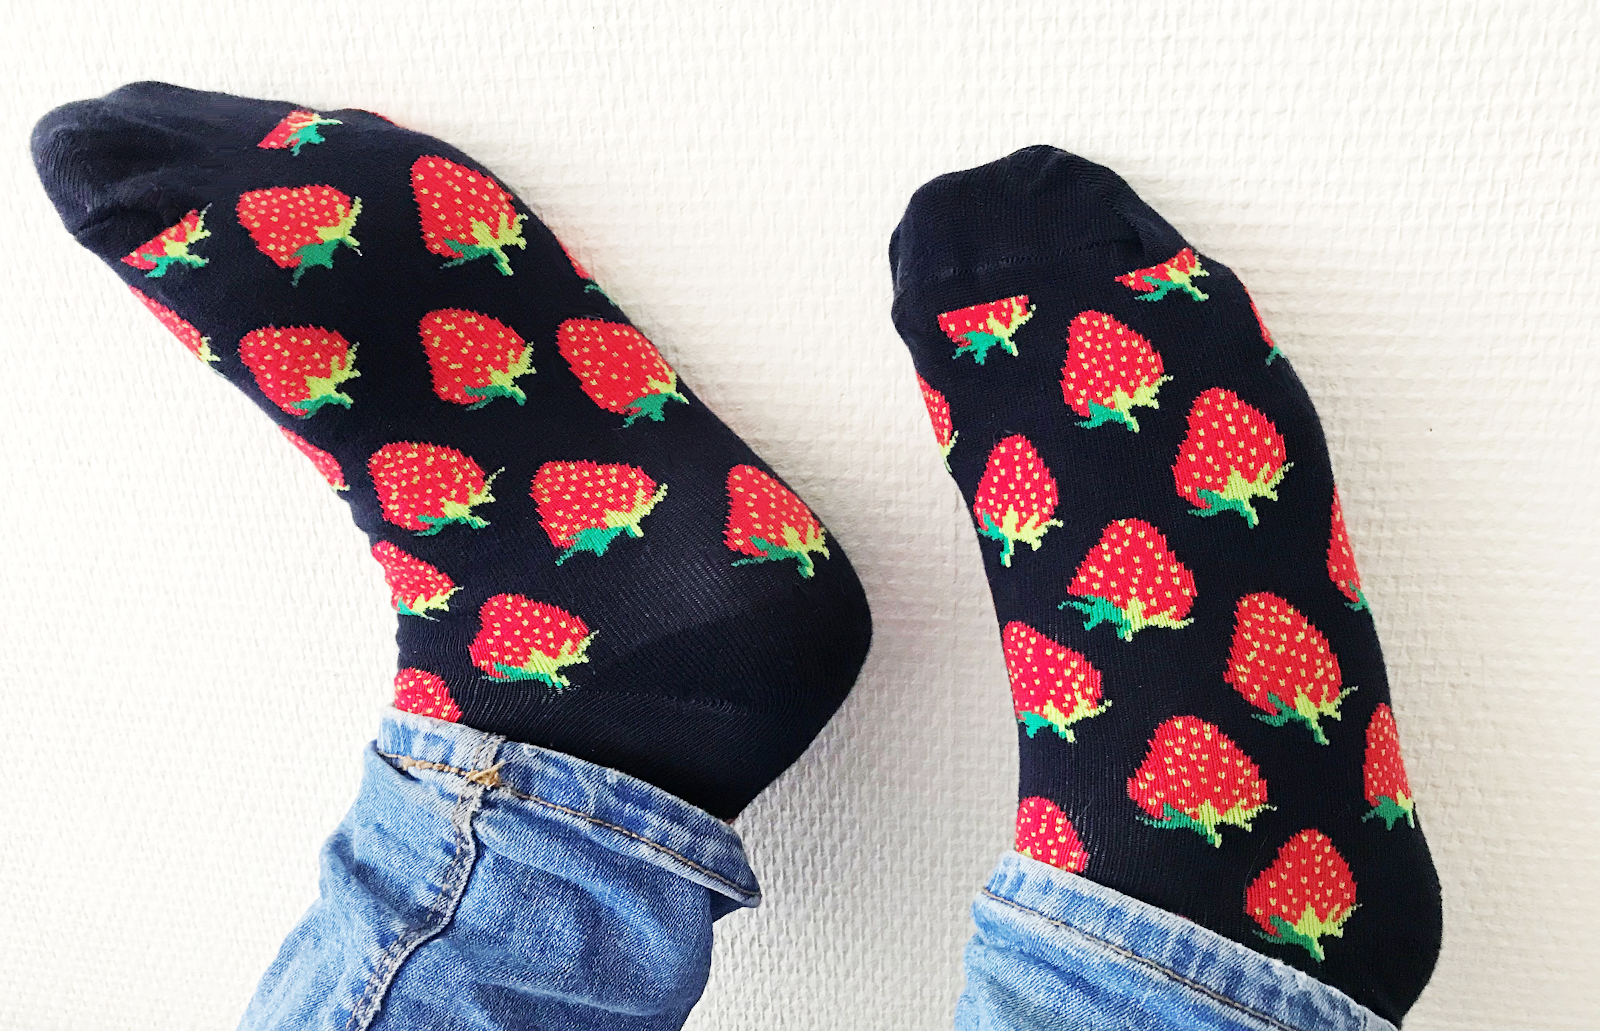 De vrolijkste sokken om te dragen Happy Socks HemdvoorHem